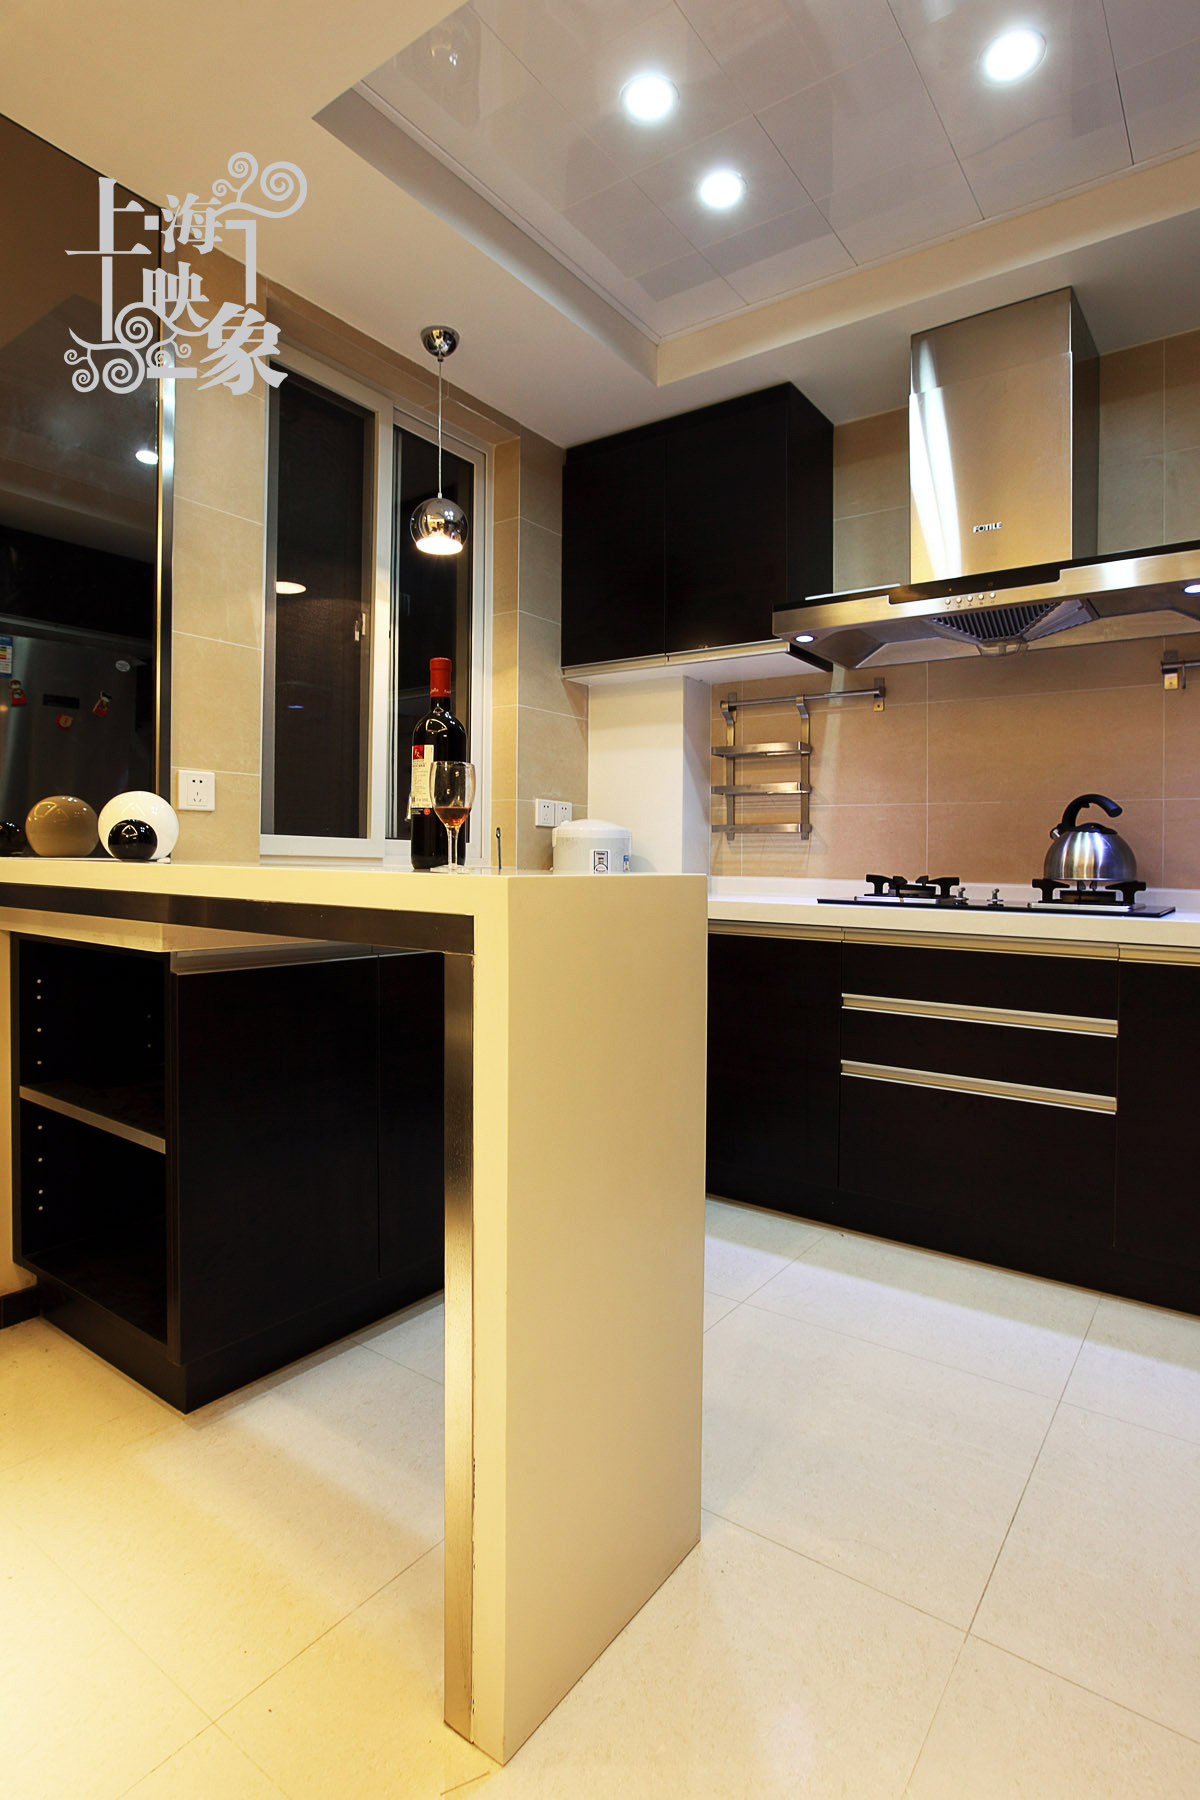 其他 二居 厨房图片来自上海映象设计-无锡站在【高清】8.5万打造89平低调奢华回味36的分享